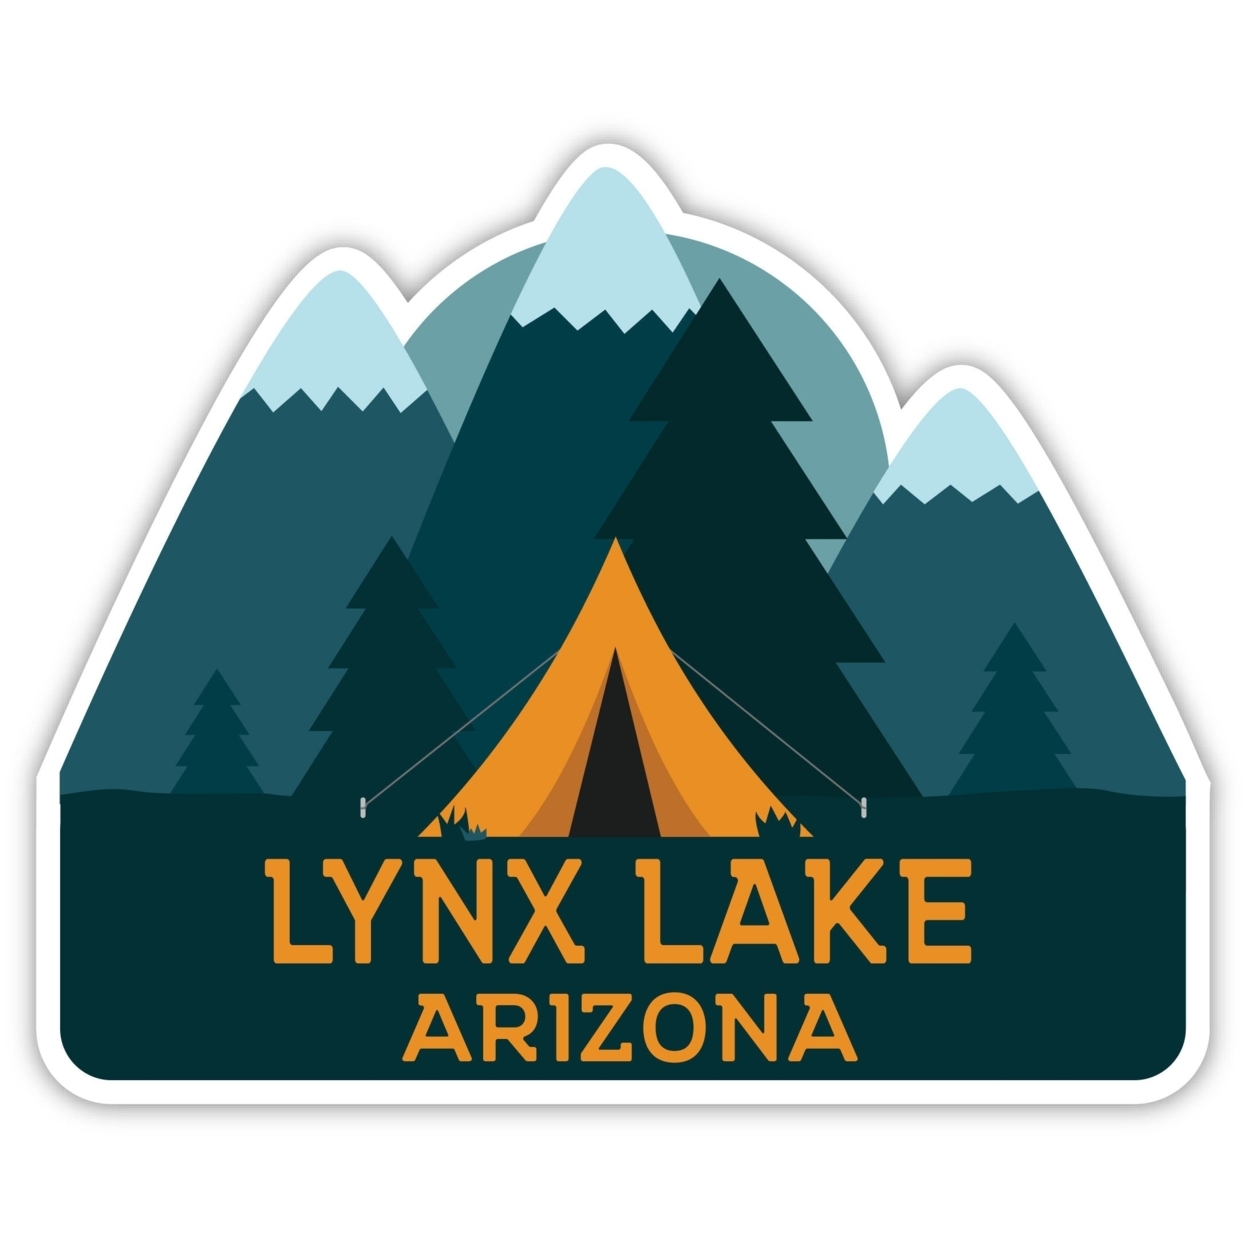 Lynx Lake Arizona Souvenir Decorative Stickers (Choose Theme And Size) - 4-Inch, Bear